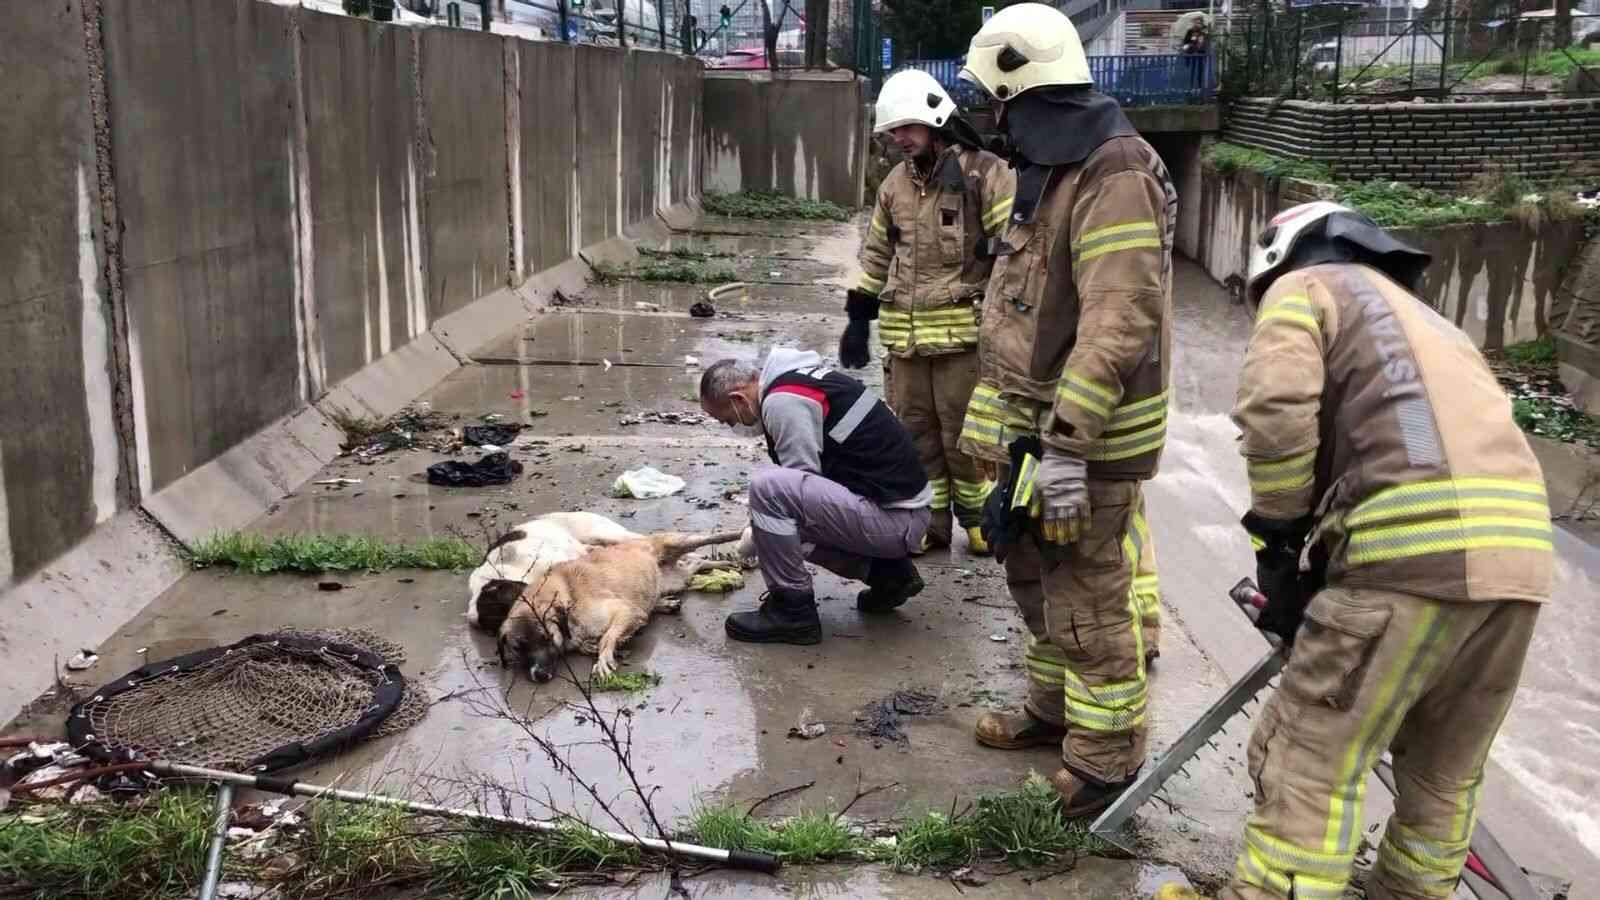 Ataşehir’de dereye düşen 6 köpek boğulmaktan kurtarıldı #istanbul